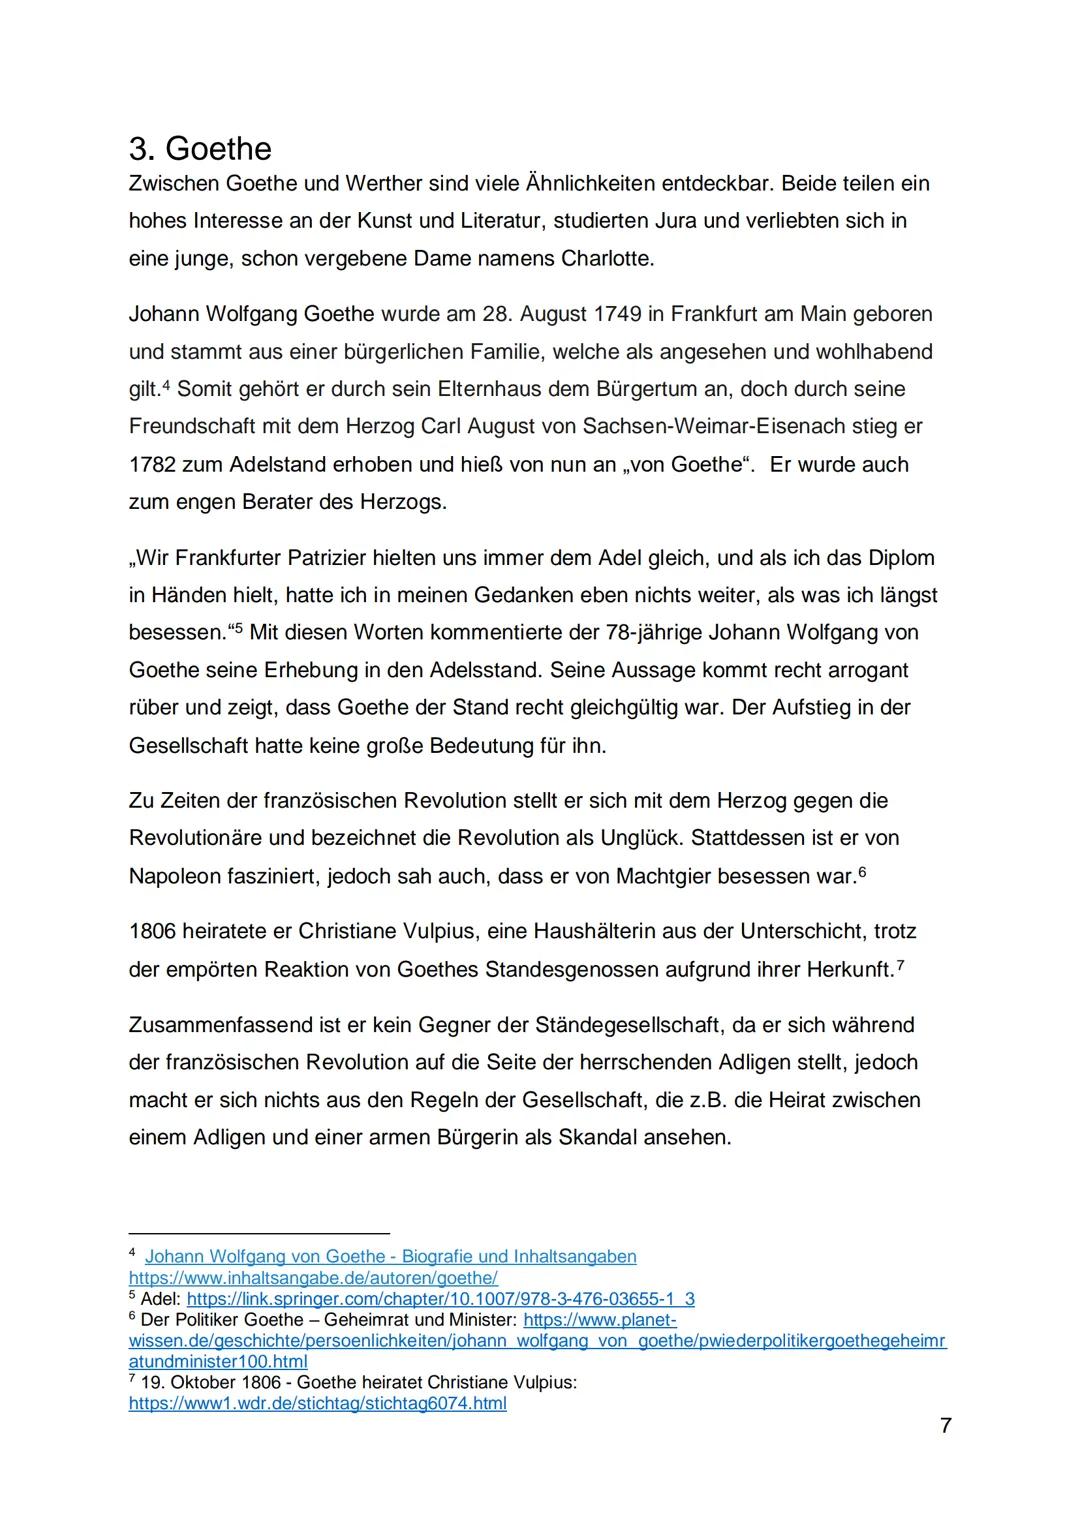 Lehrkraft: Fr. Hölscher
Johann Wolfgang
Goethe: Die
Leiden des
jungen Werther
Werther und die Gesellschaft
Schönwälder, Tanja
18.6.2020 Inha